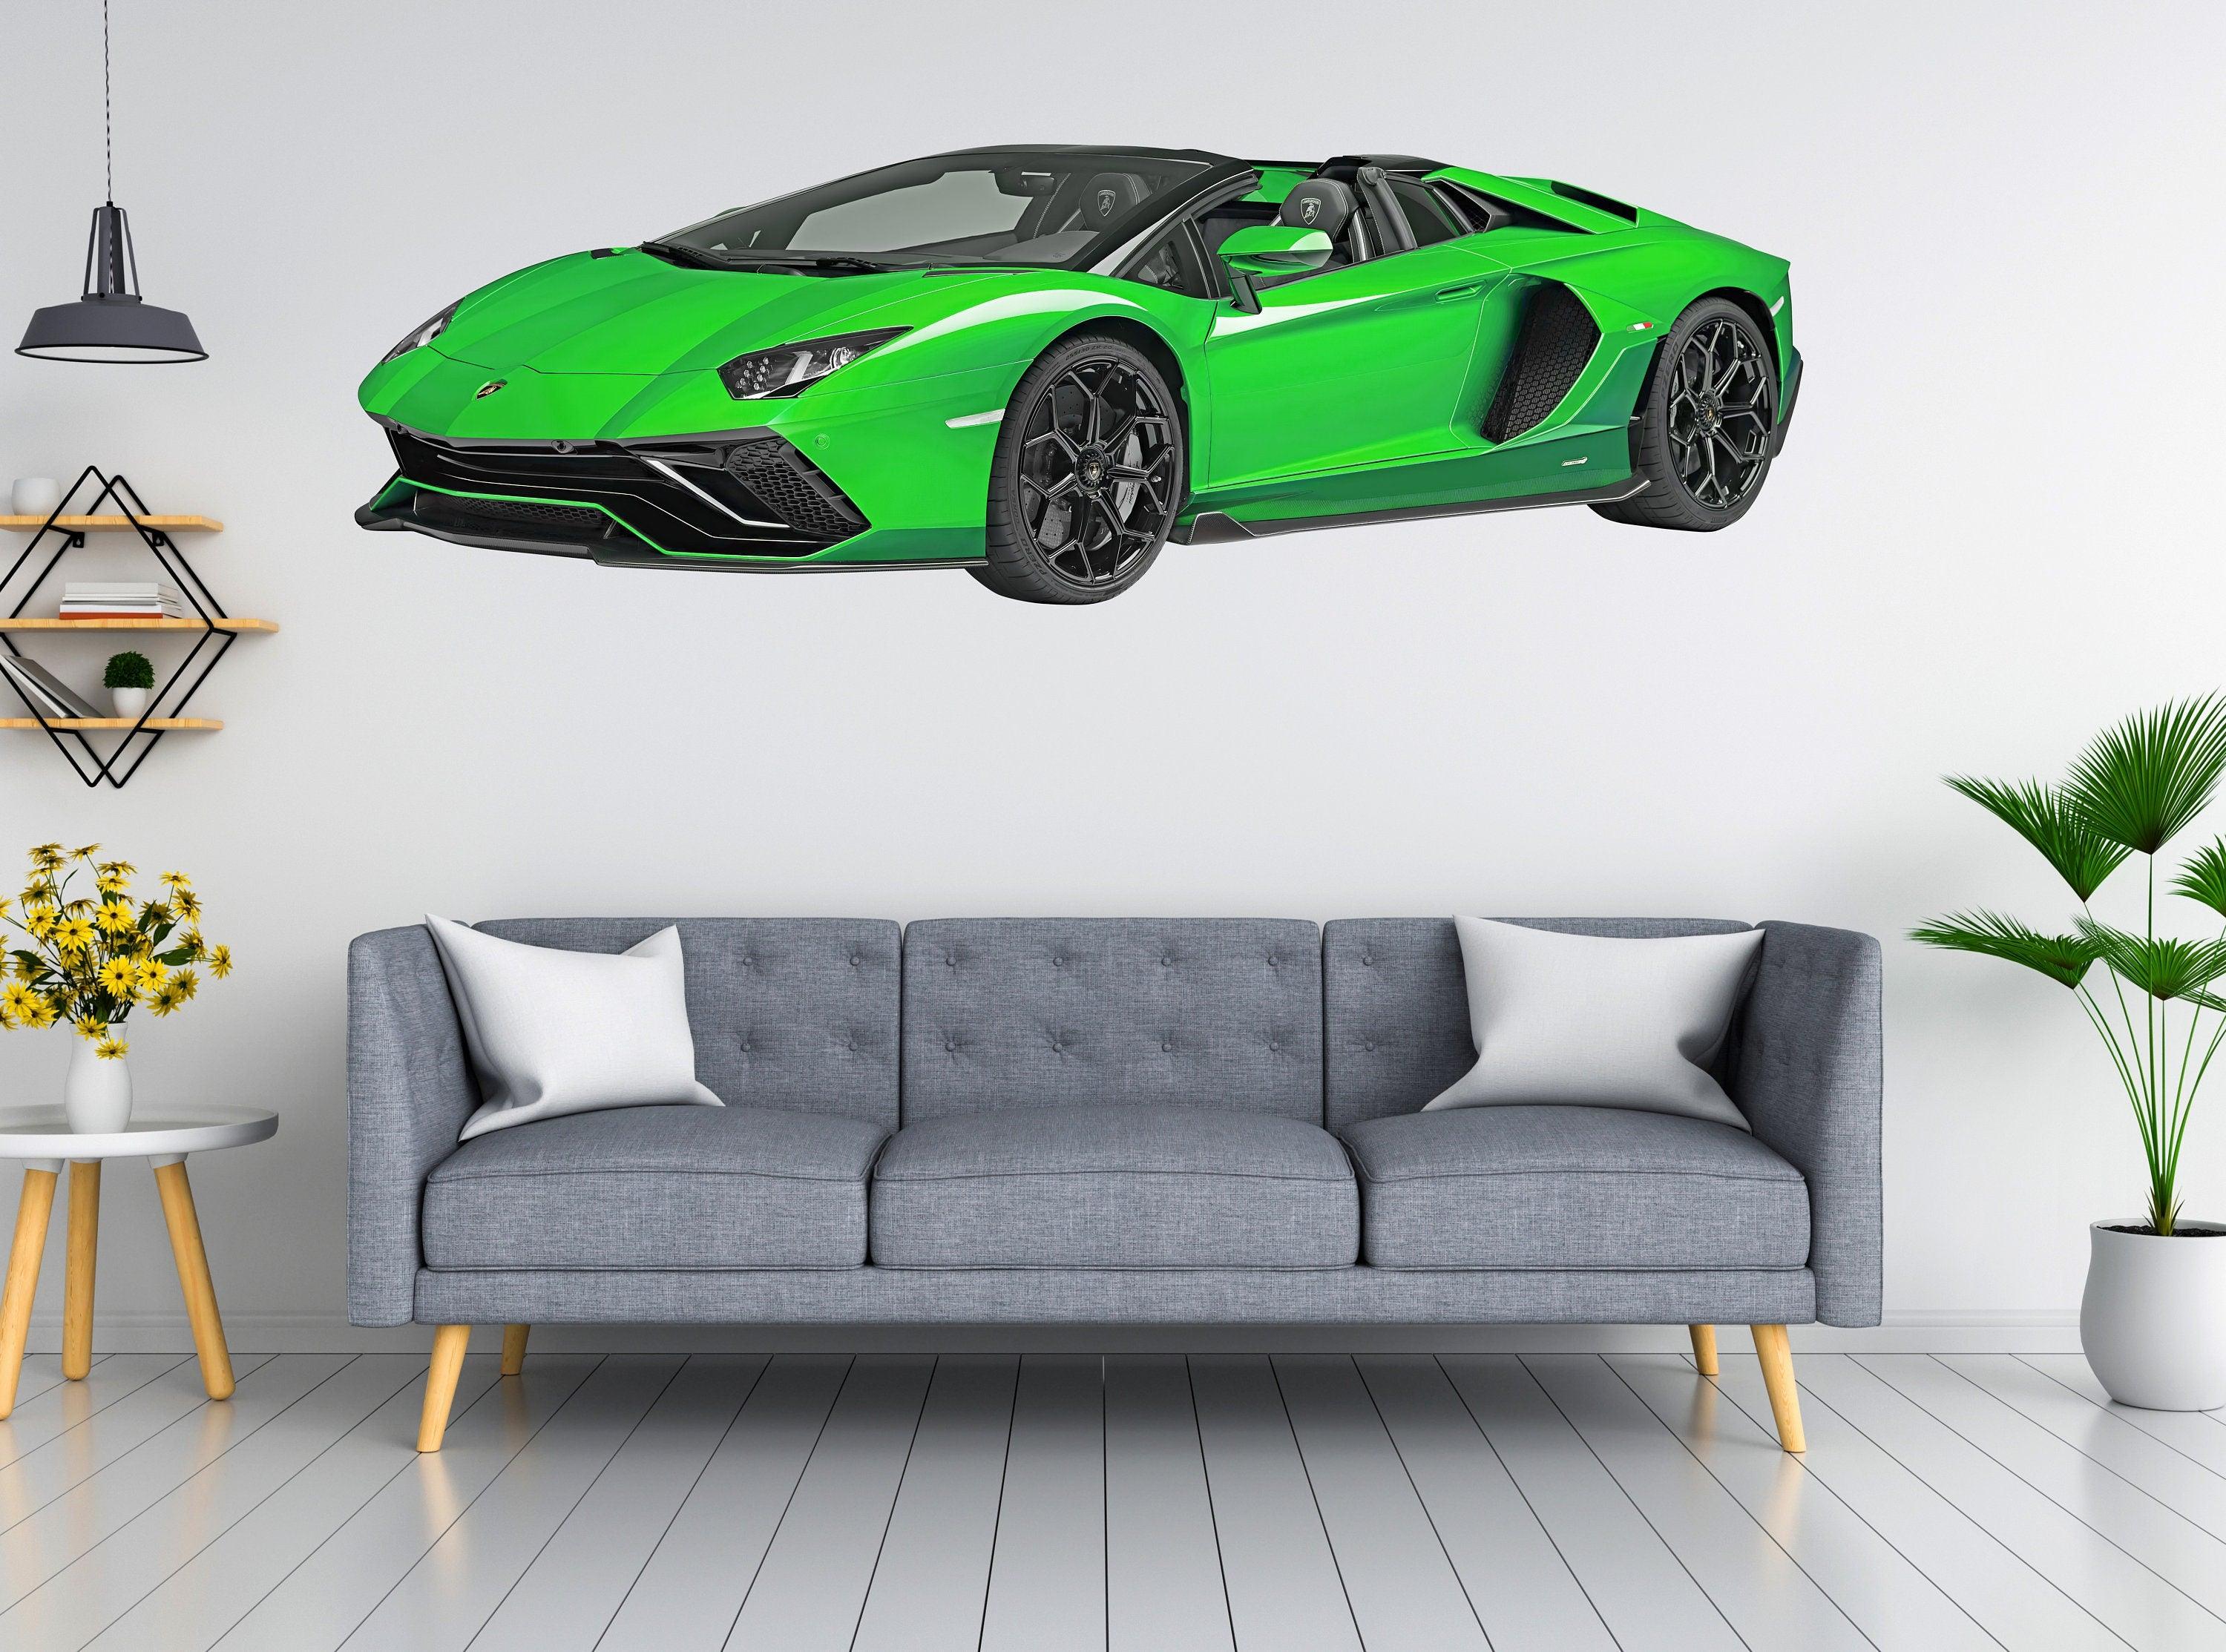 2022 Lamborghini Aventador LP780 Wall Decal Sticker, Multi Colour options